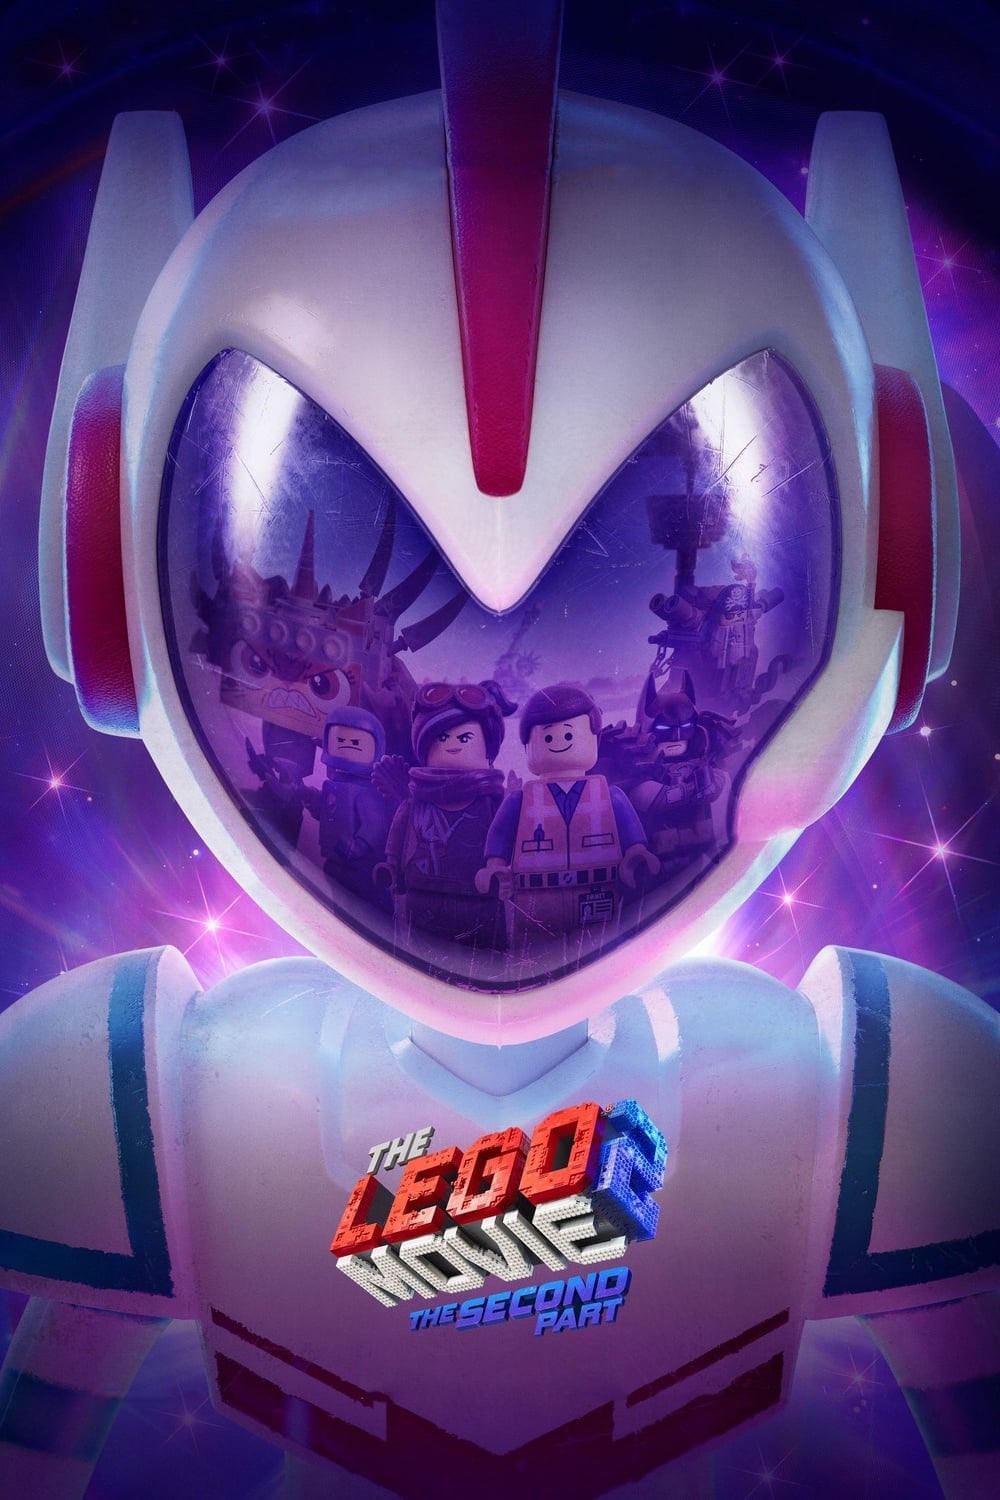 the Lego movie 2 una nuova avventura immagine - poster - locandina - poster hd - poster ufficiale